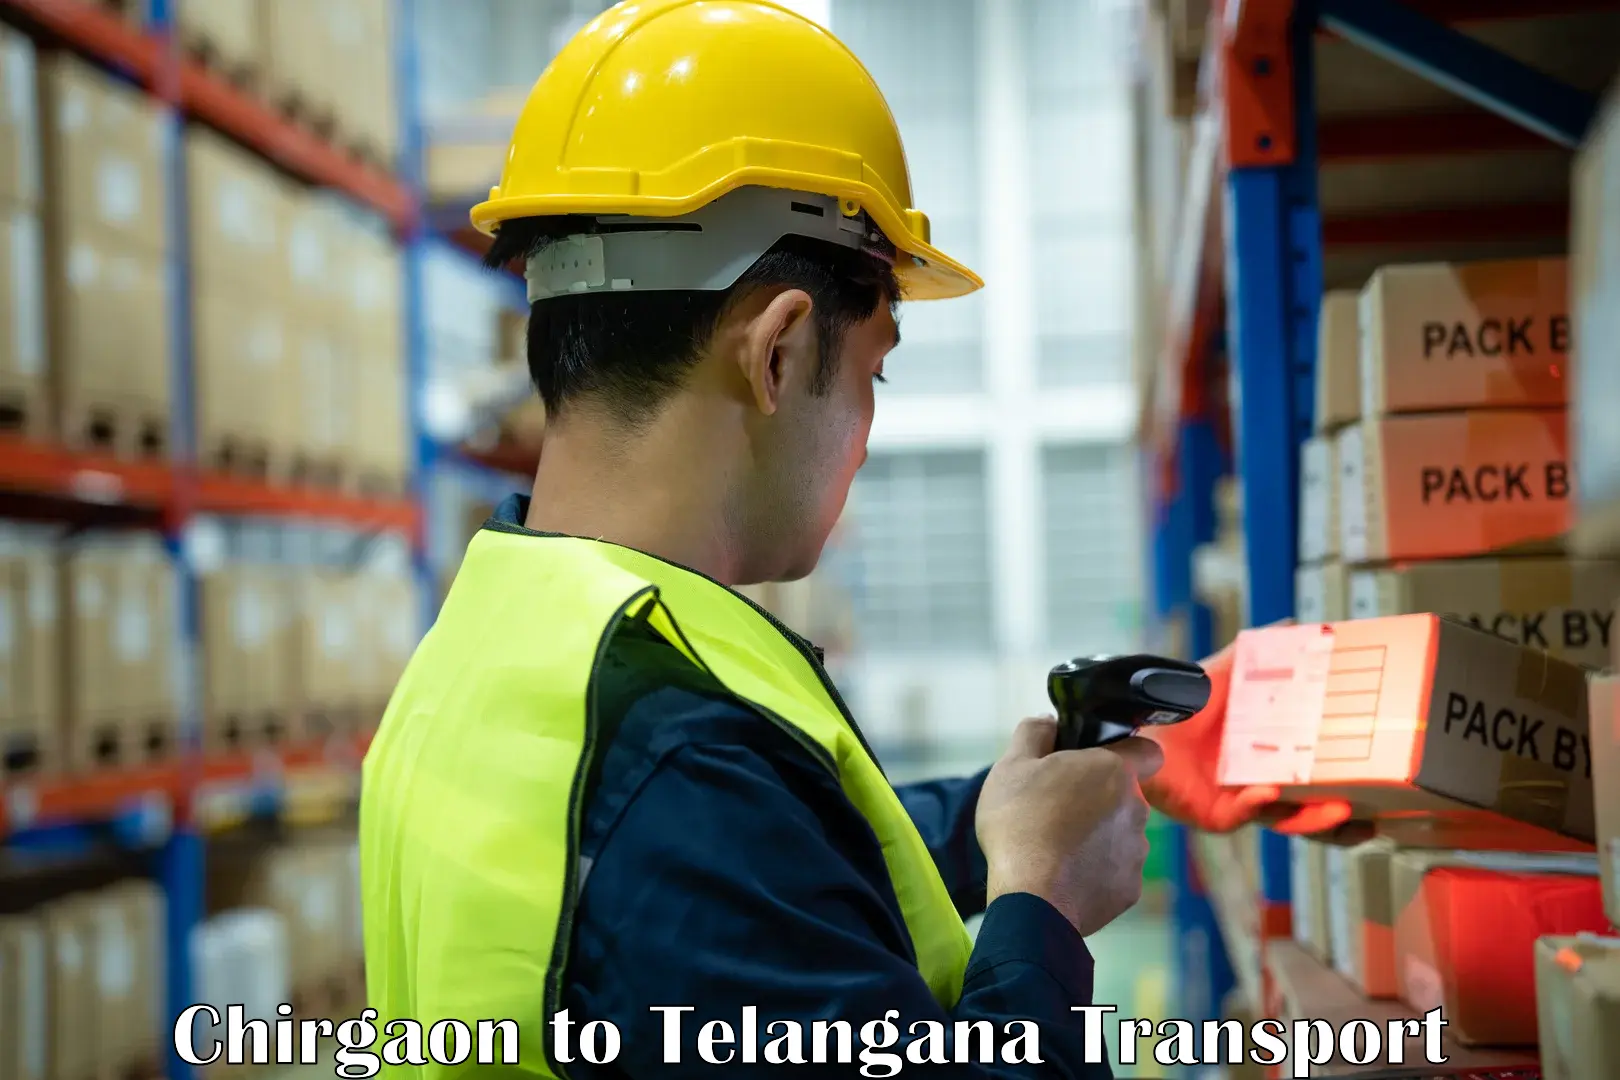 Shipping partner Chirgaon to Telangana